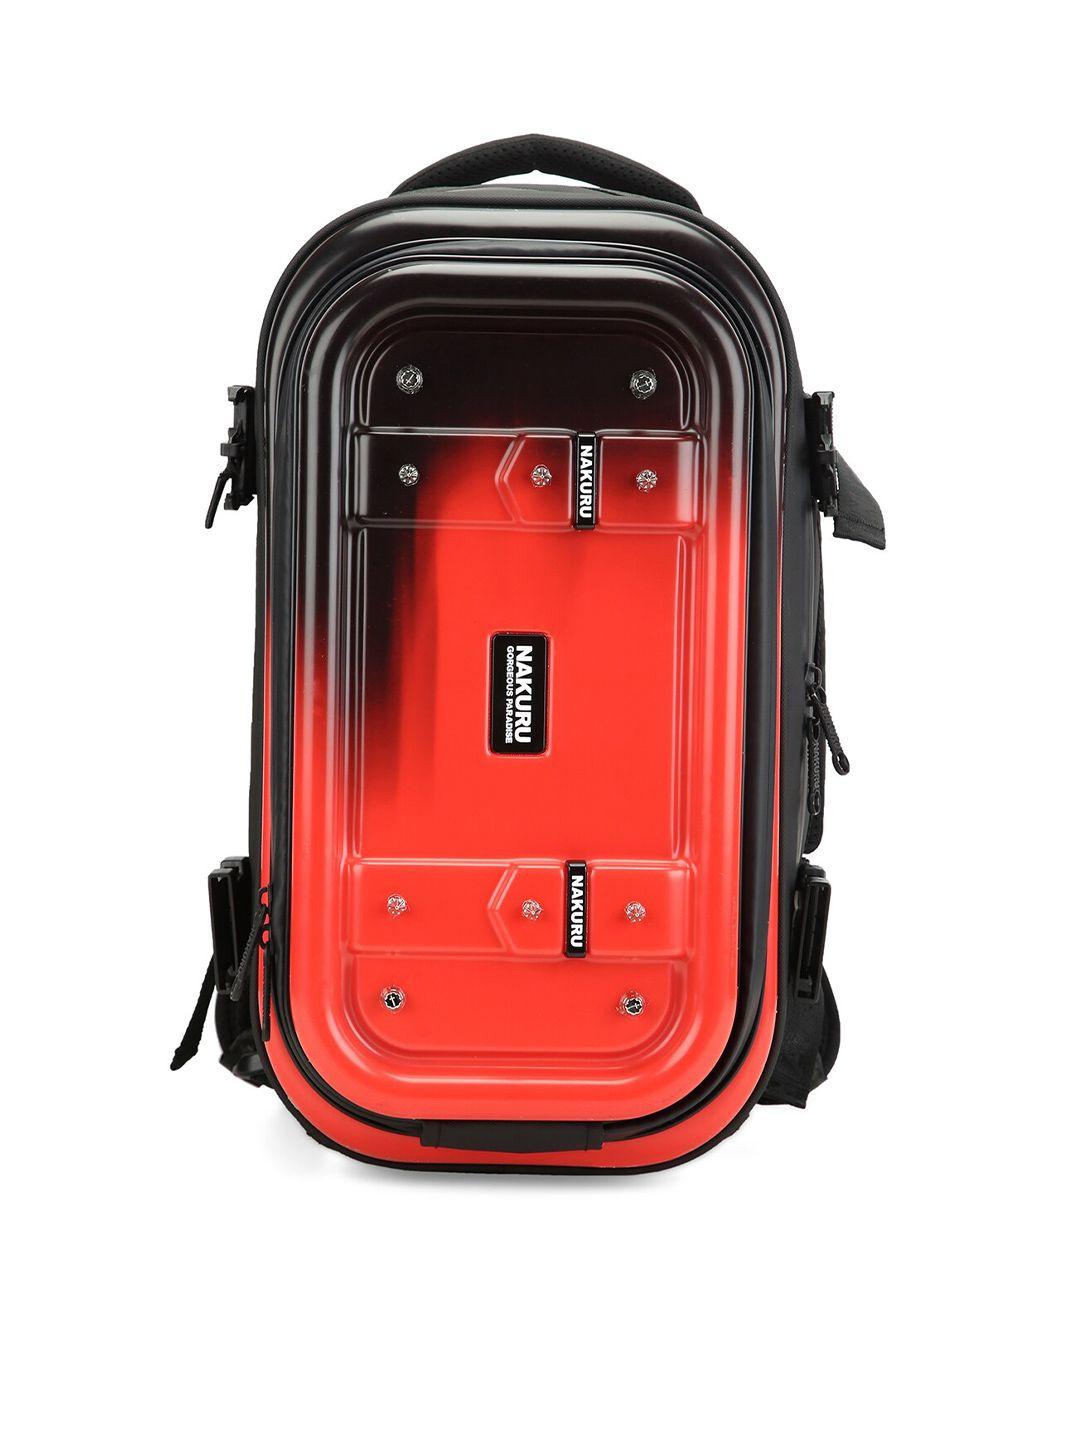 nakuru ae-6007 range soft case one size backpack